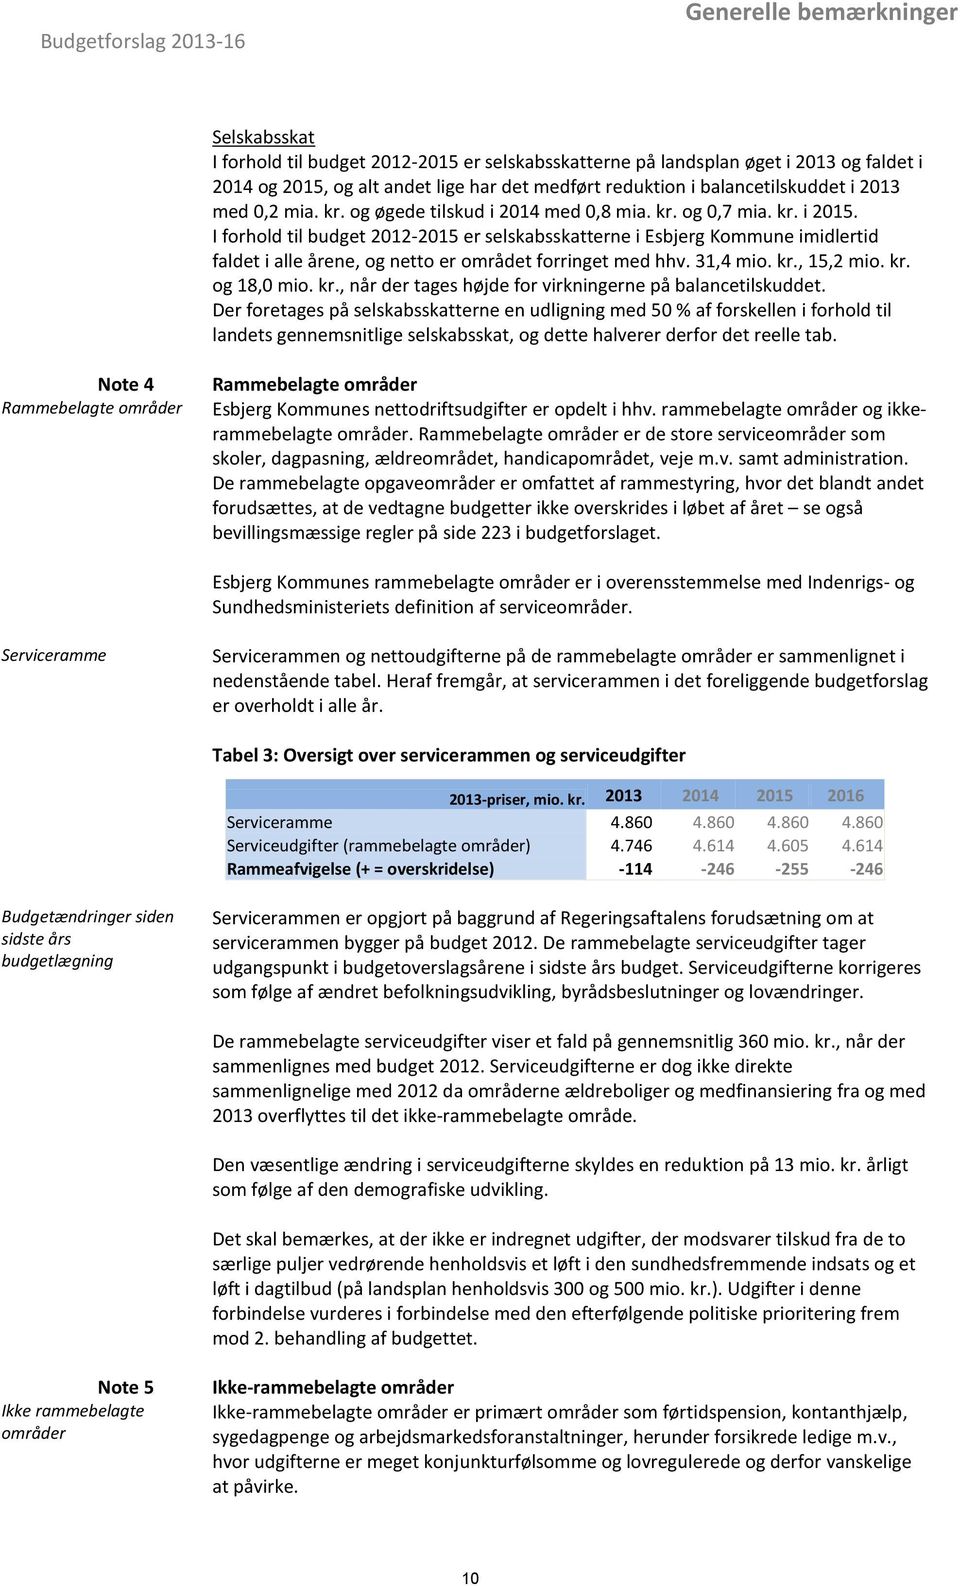 I forhold til budget 2012-2015 er selskabsskatterne i Esbjerg Kommune imidlertid faldet i alle årene, og netto er området forringet med hhv. 31,4 mio. kr.